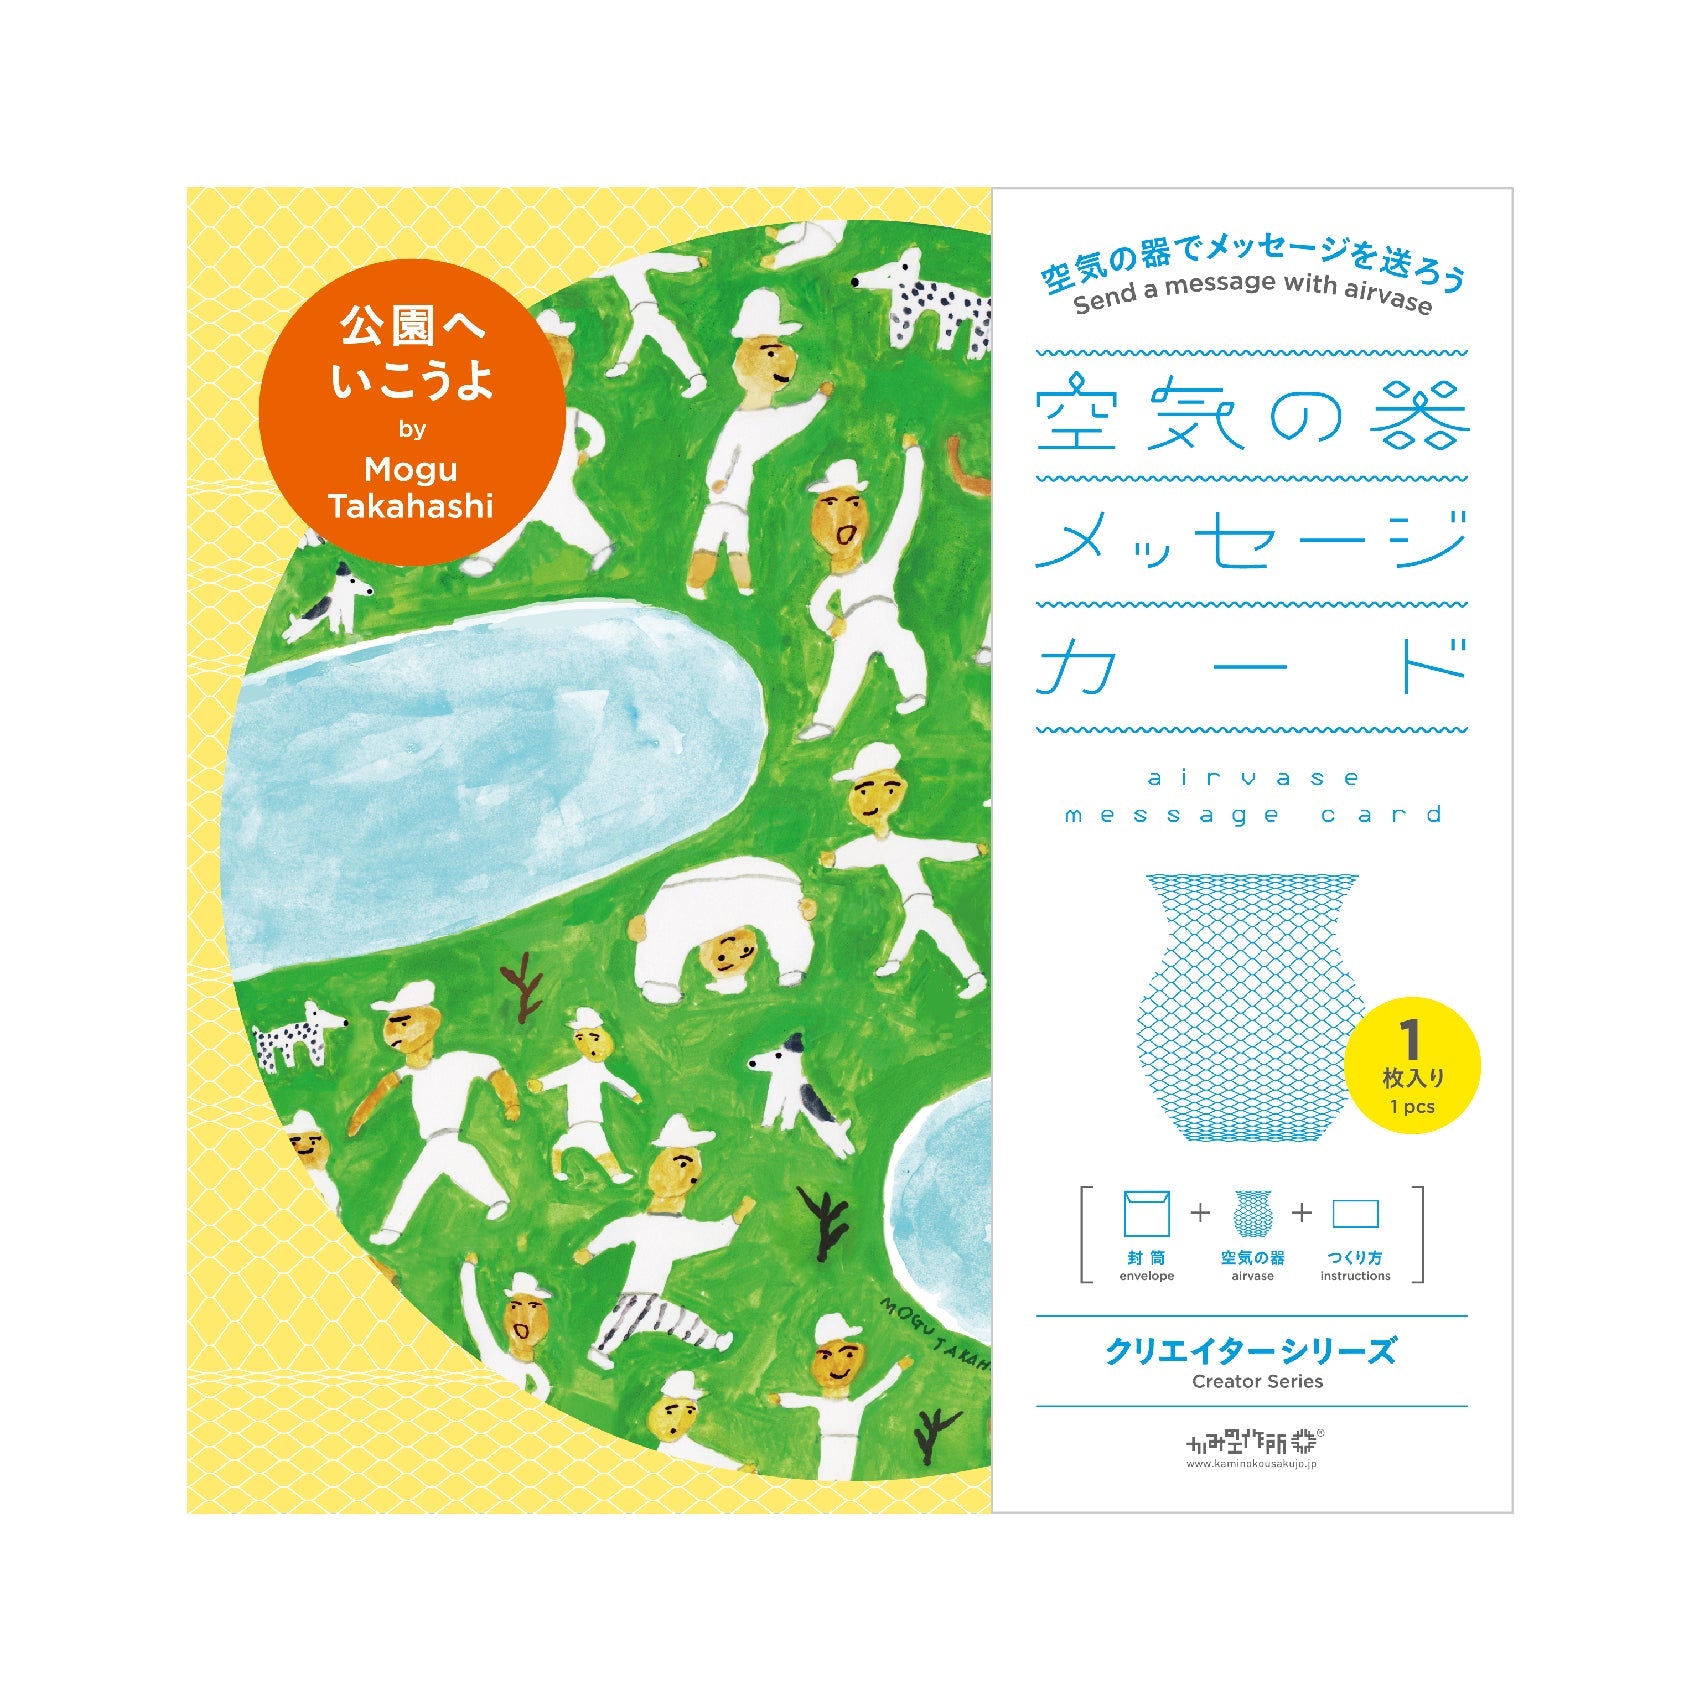 空気の器メッセージカード クリエイターシリーズ by Mogu Takahashi